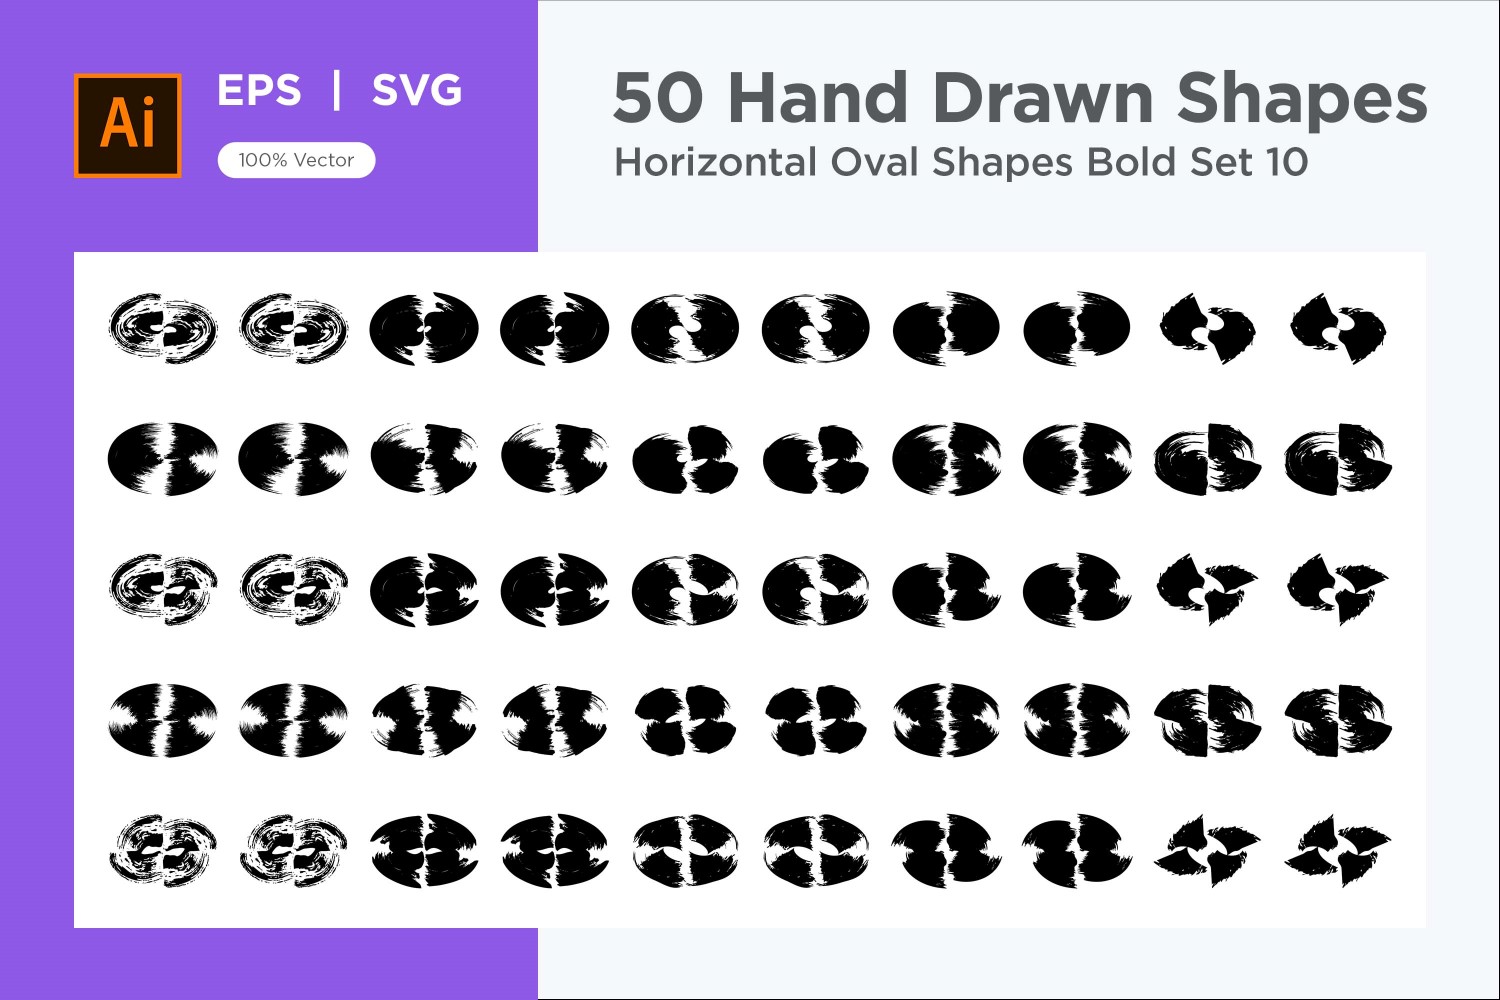 Horizontal Oval Shape Bold 50_Set V 10